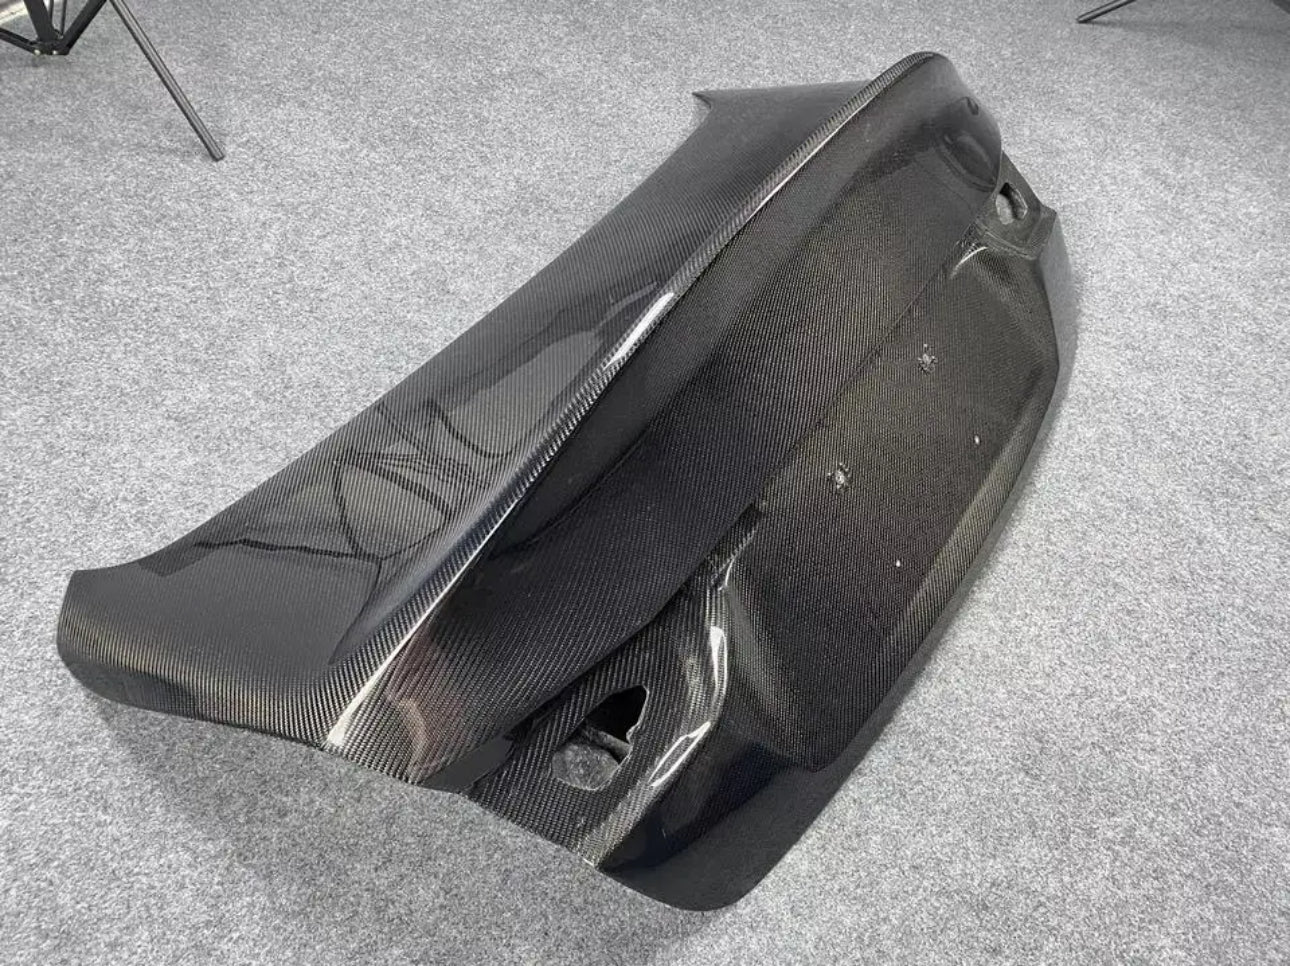 CSL style duckbill carbon fiber rear trunk for infiniti Q50 14-17 2018+